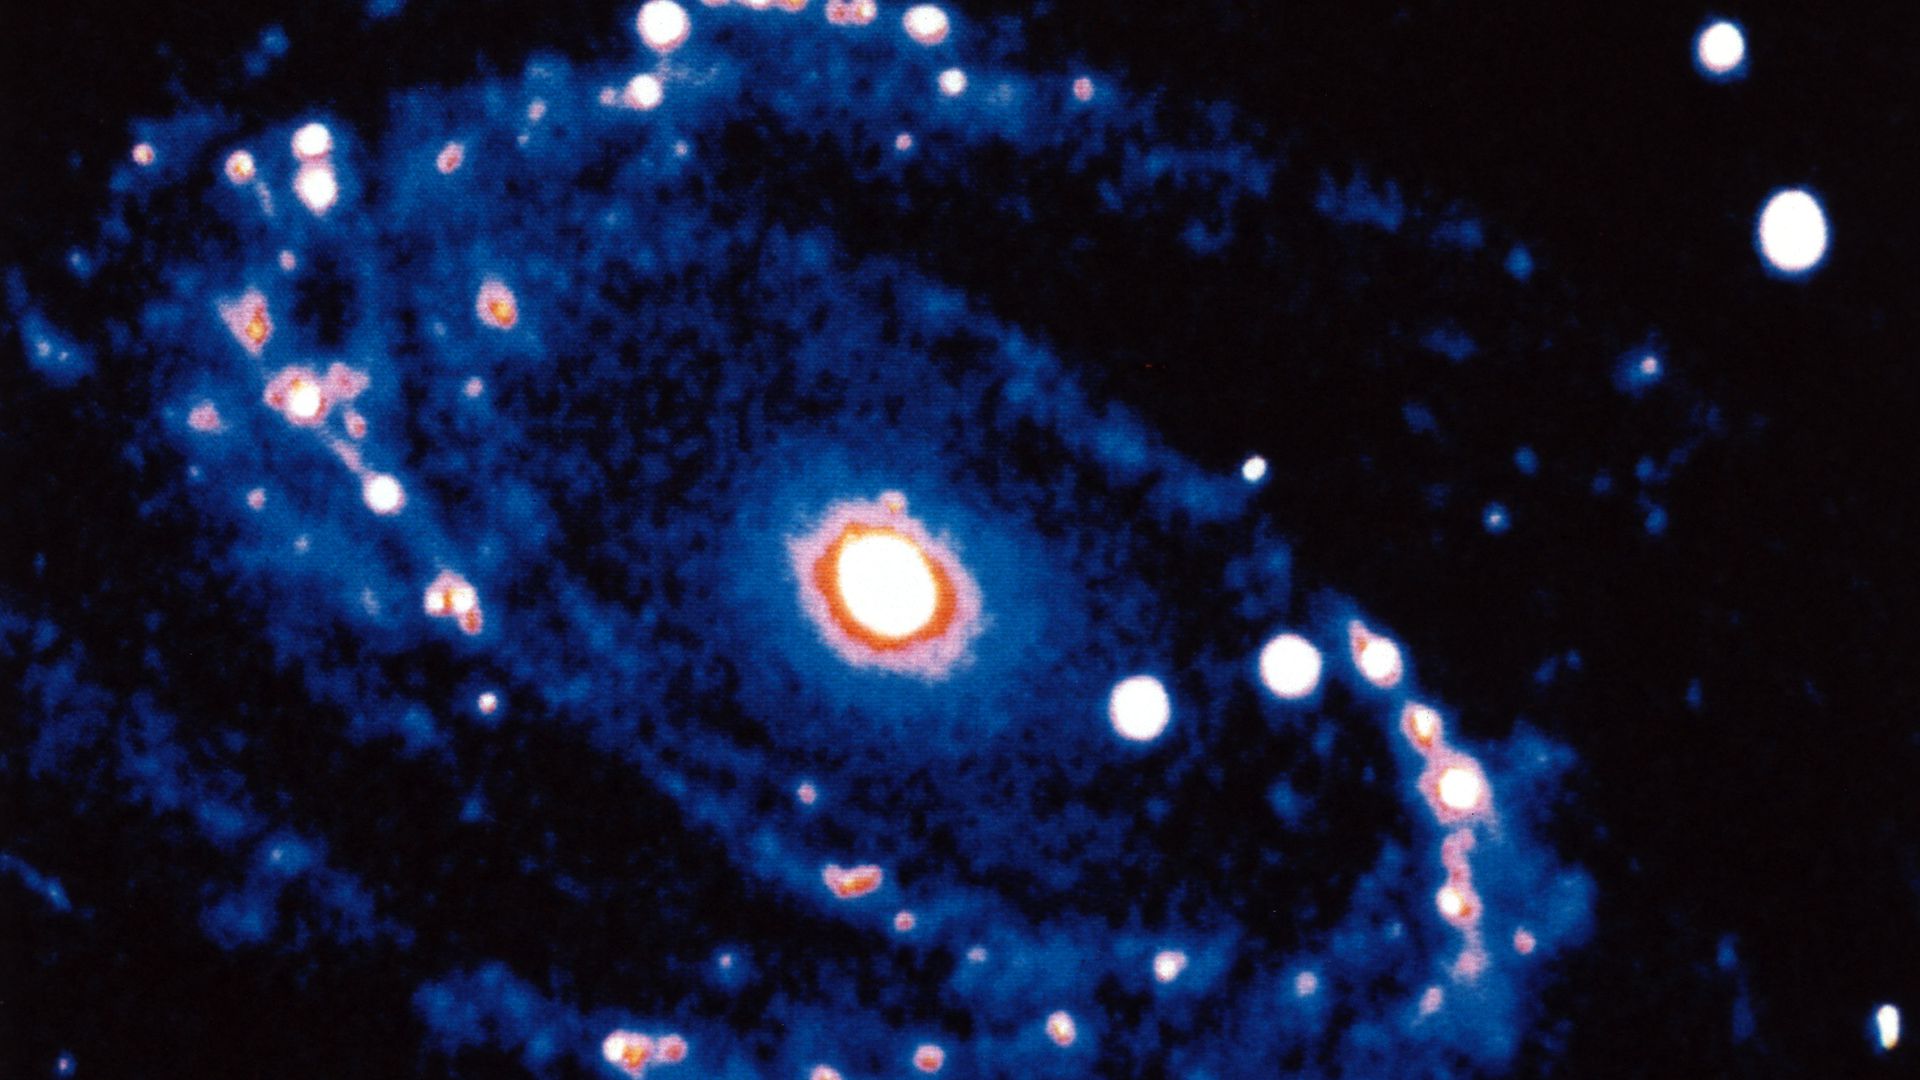 Spiral Galaxy M81 in constallation of Ursa Minor.